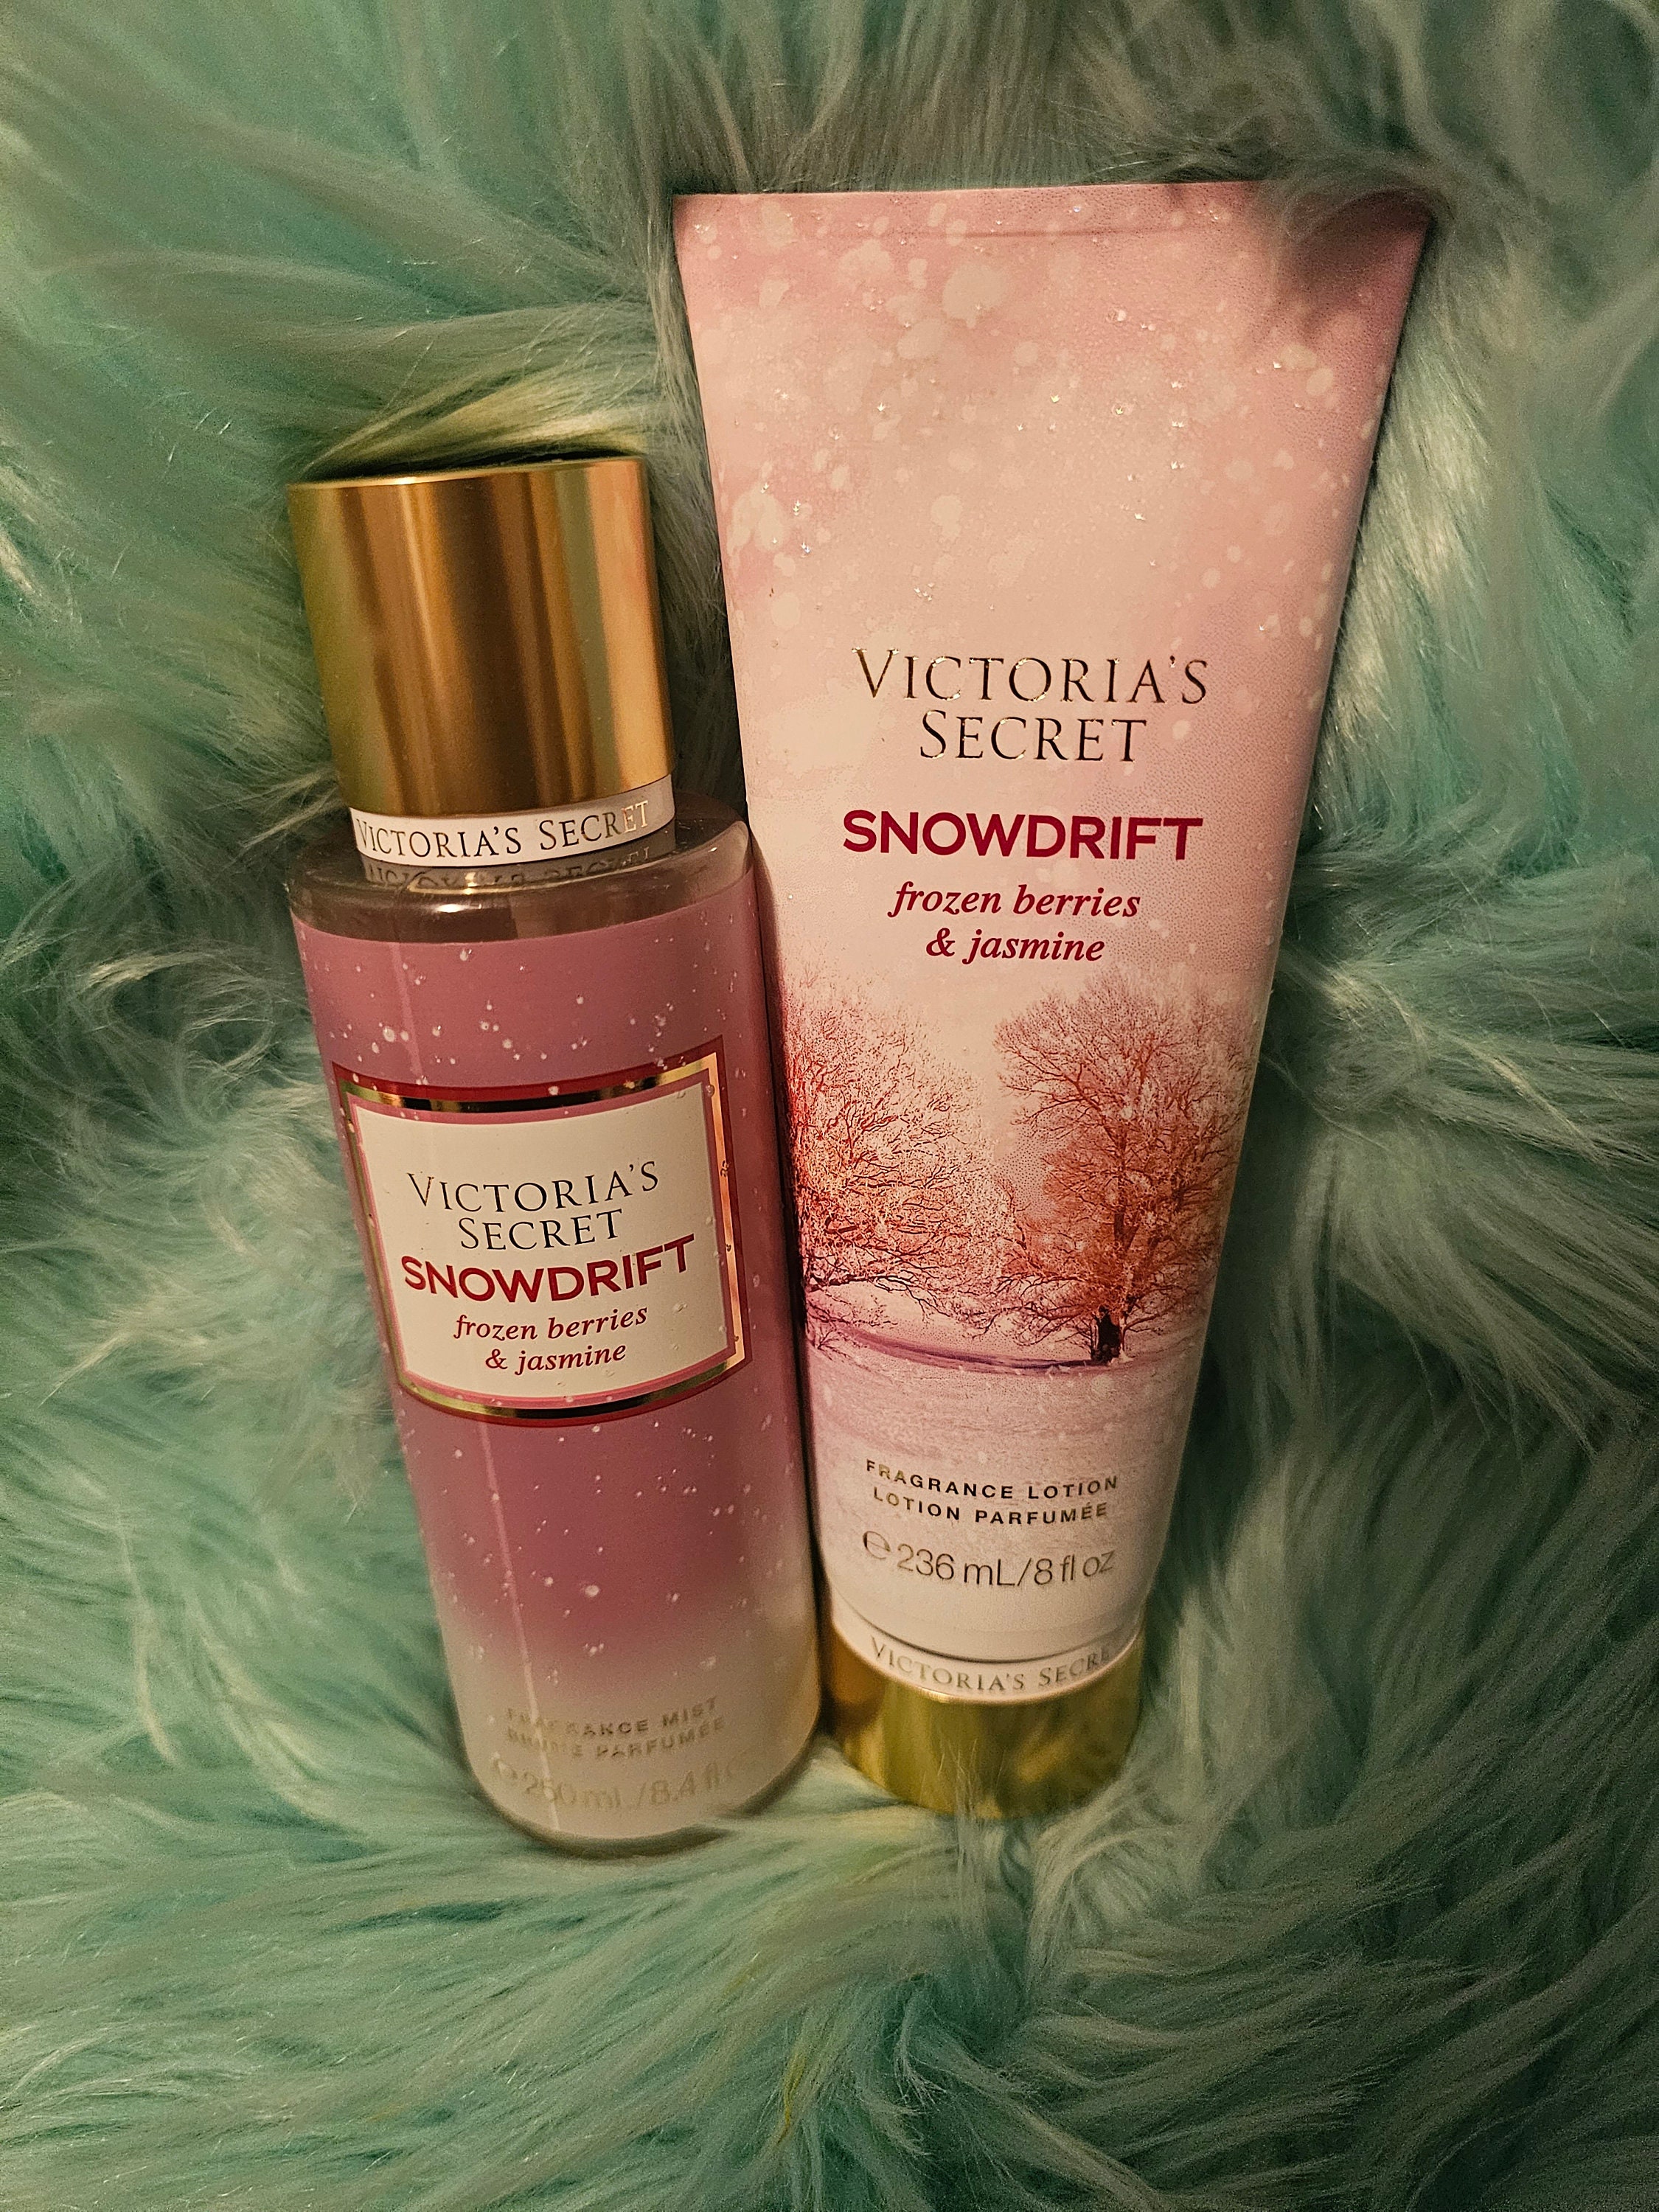 Body Splash Pink Victorias Secret Berry Glitz 250ml : Victorias